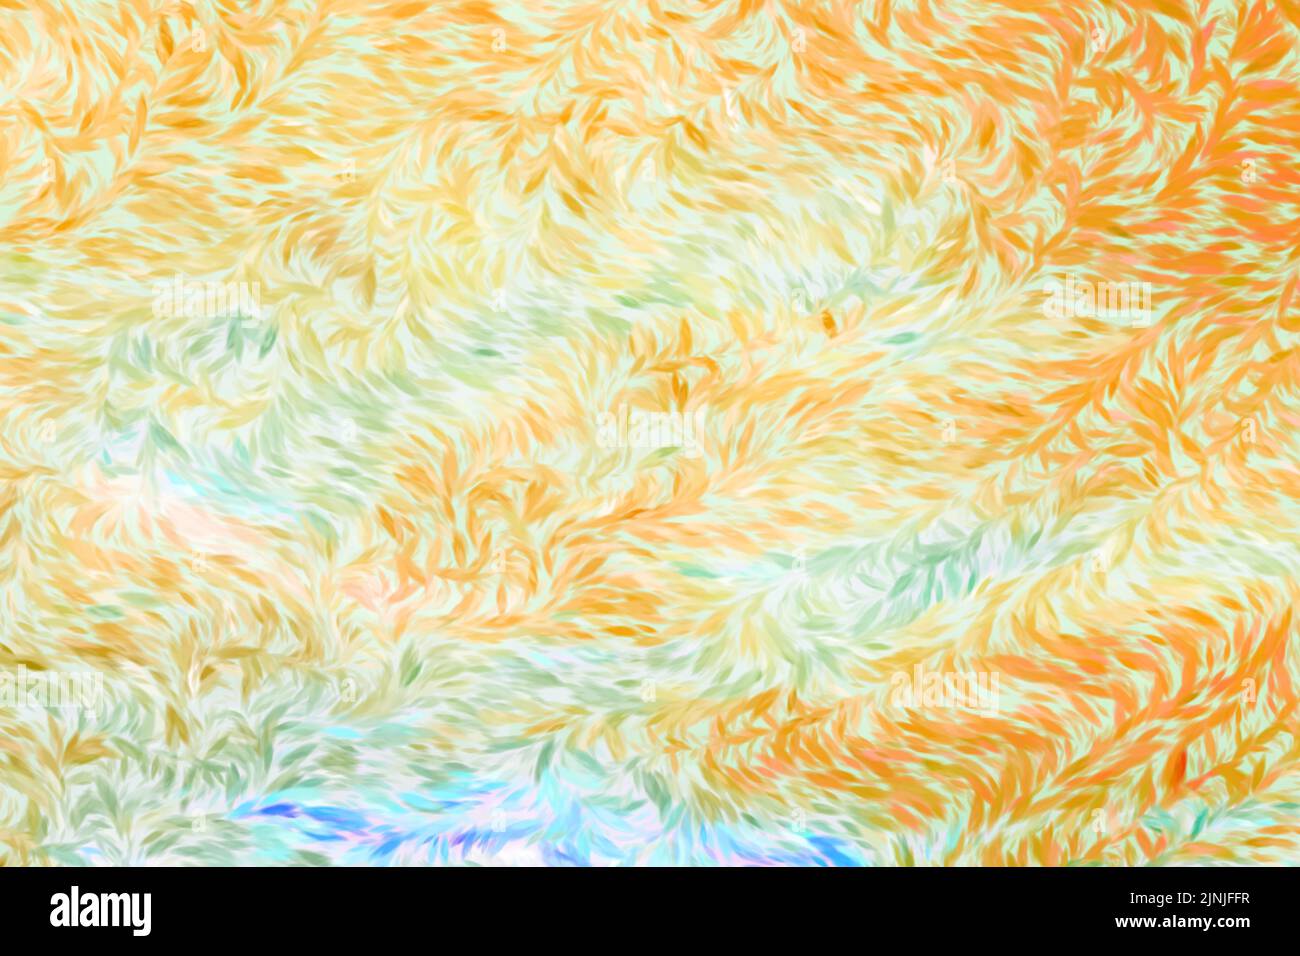 Campo di grano astratto con caratteristica di acqua. Il grano ondulato è fatto nello stile astratto dell'impressionismo artistico di Vincent Van Gogh. Uno sfondo dorato. Illustrazione Vettoriale